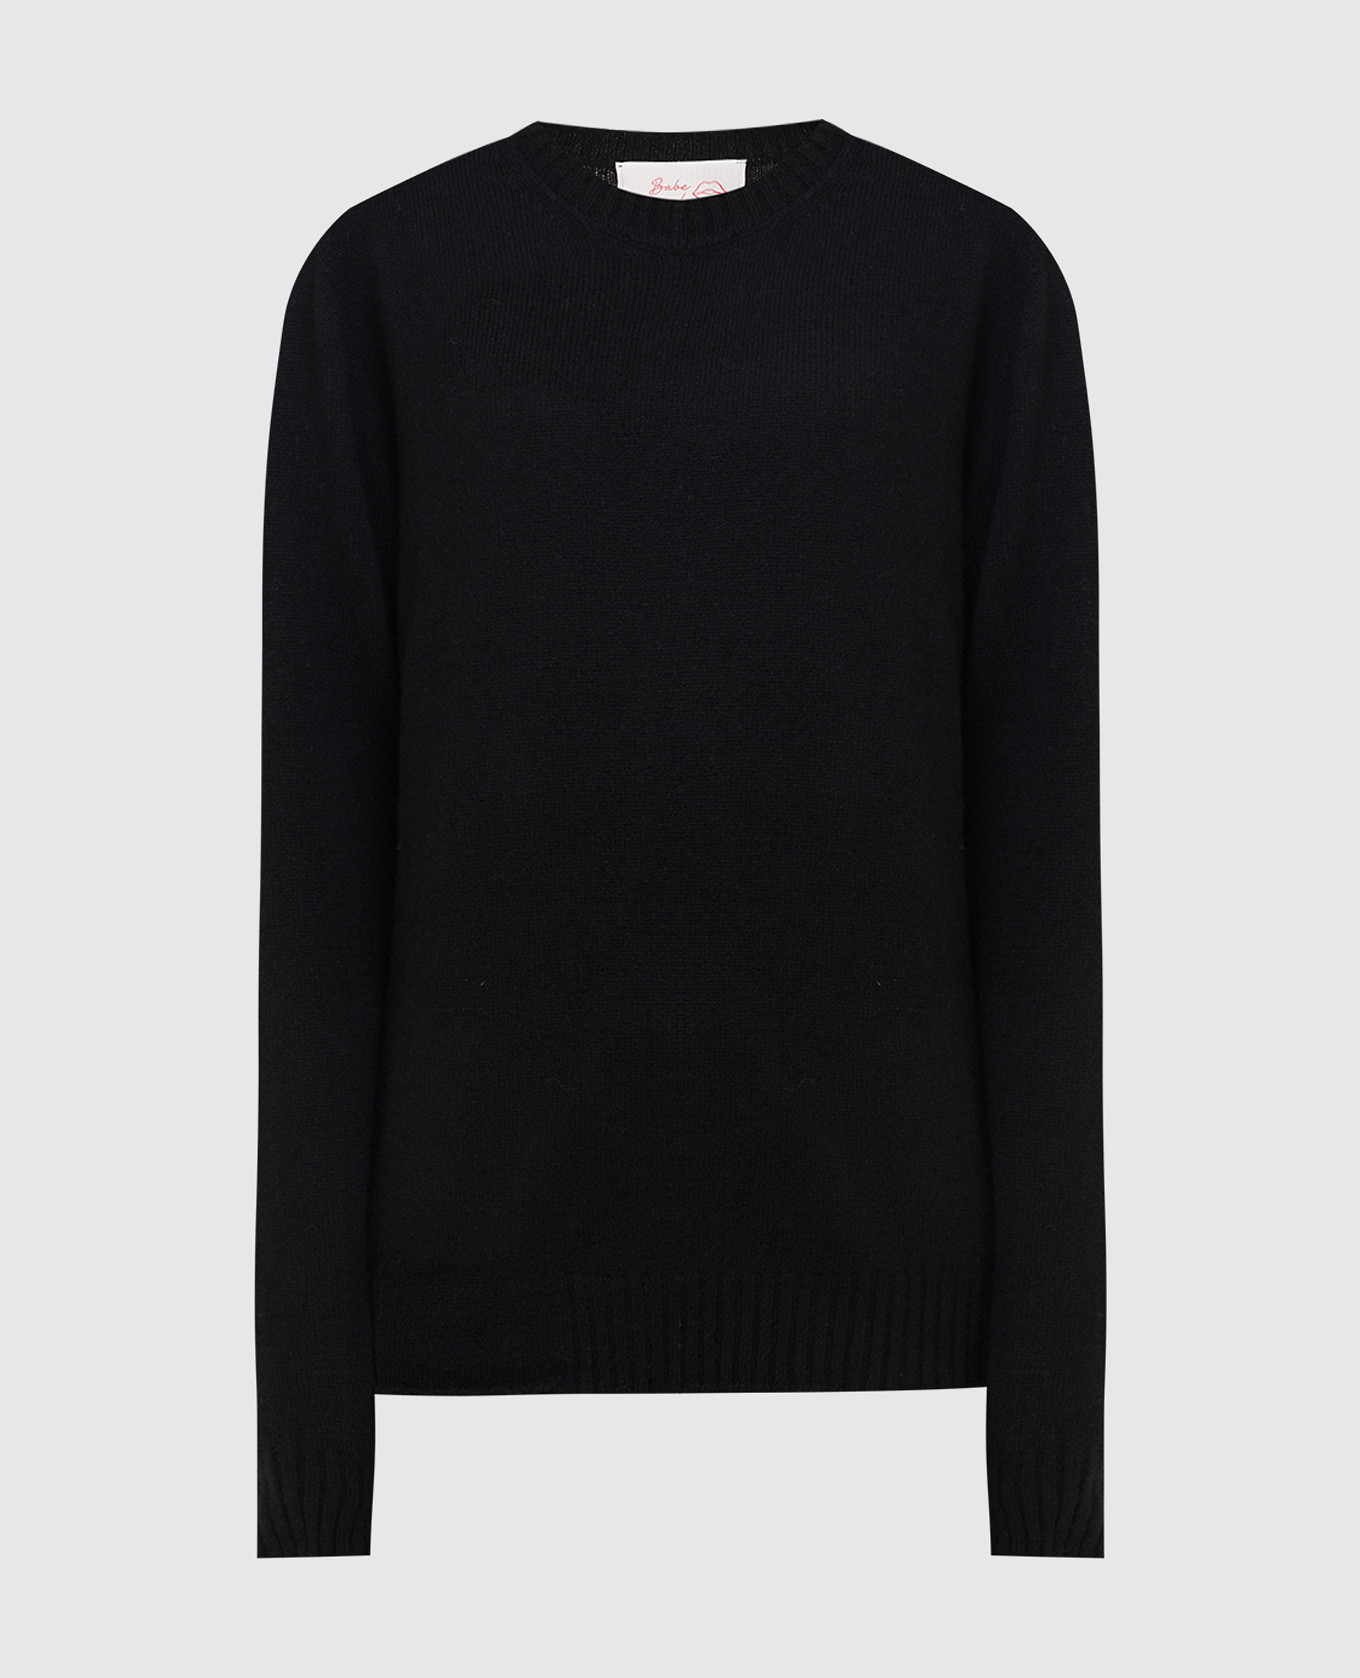 Black cashmere jumper